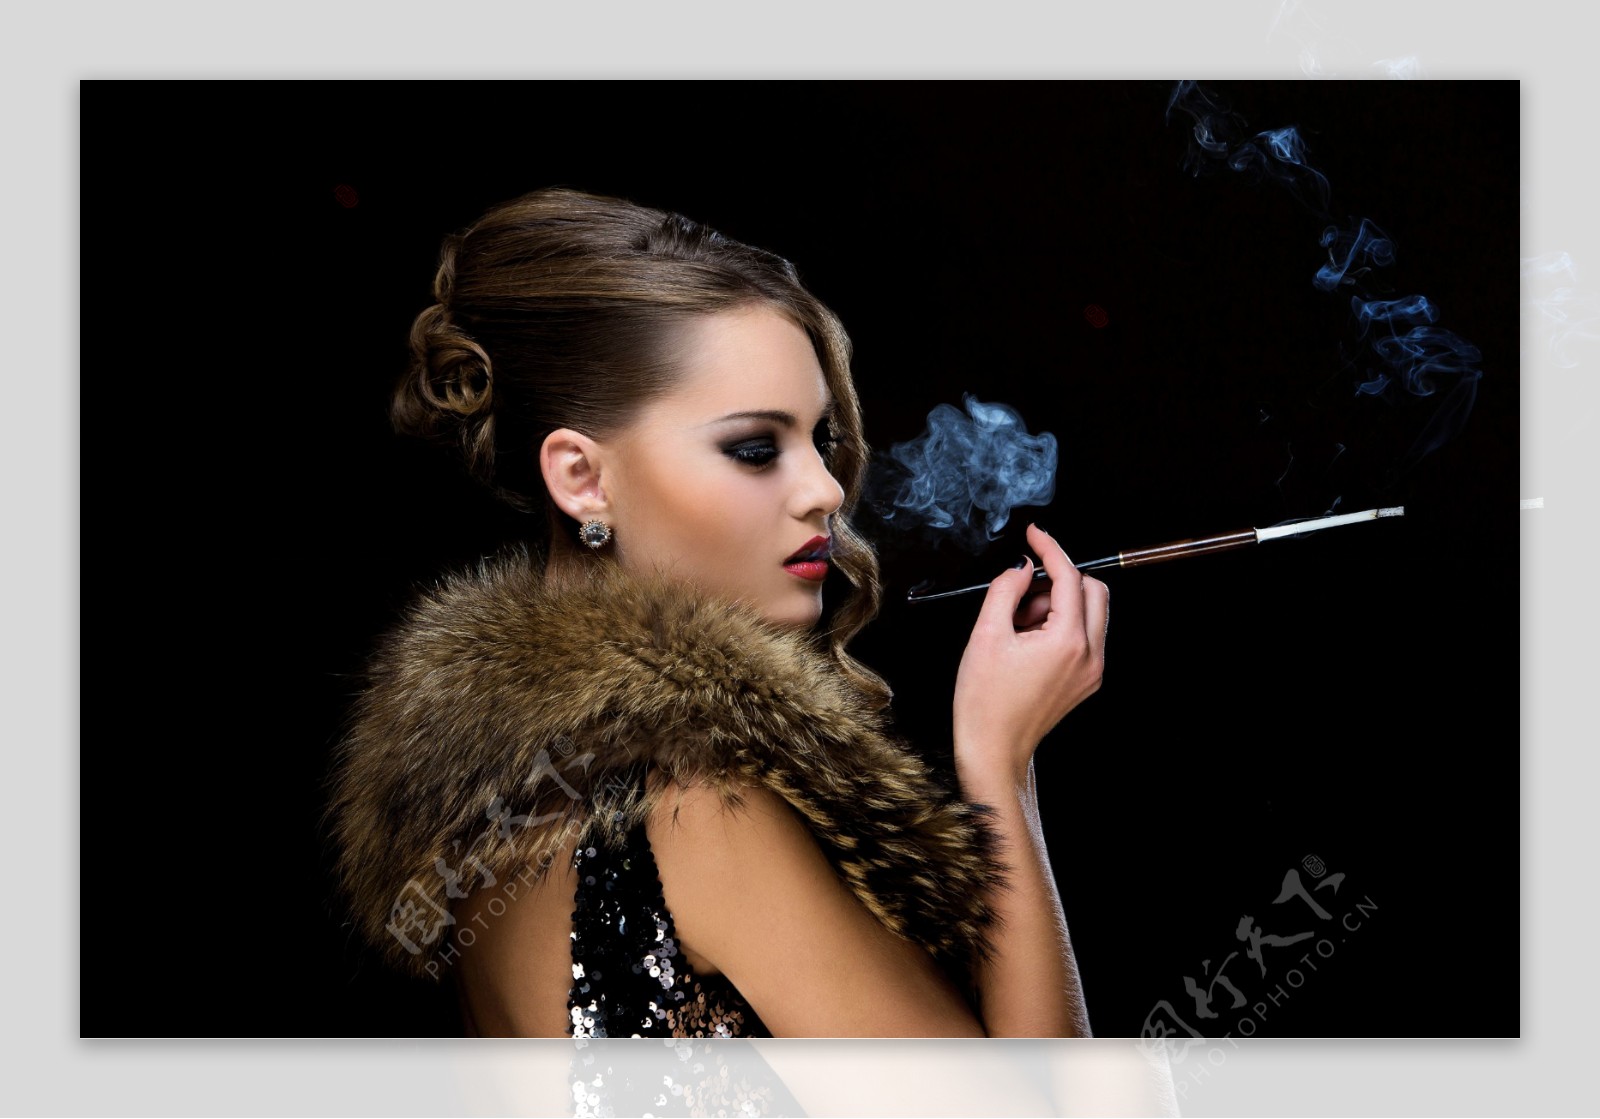 很有味道的抽烟的女人图片壁纸-壁纸图片大全